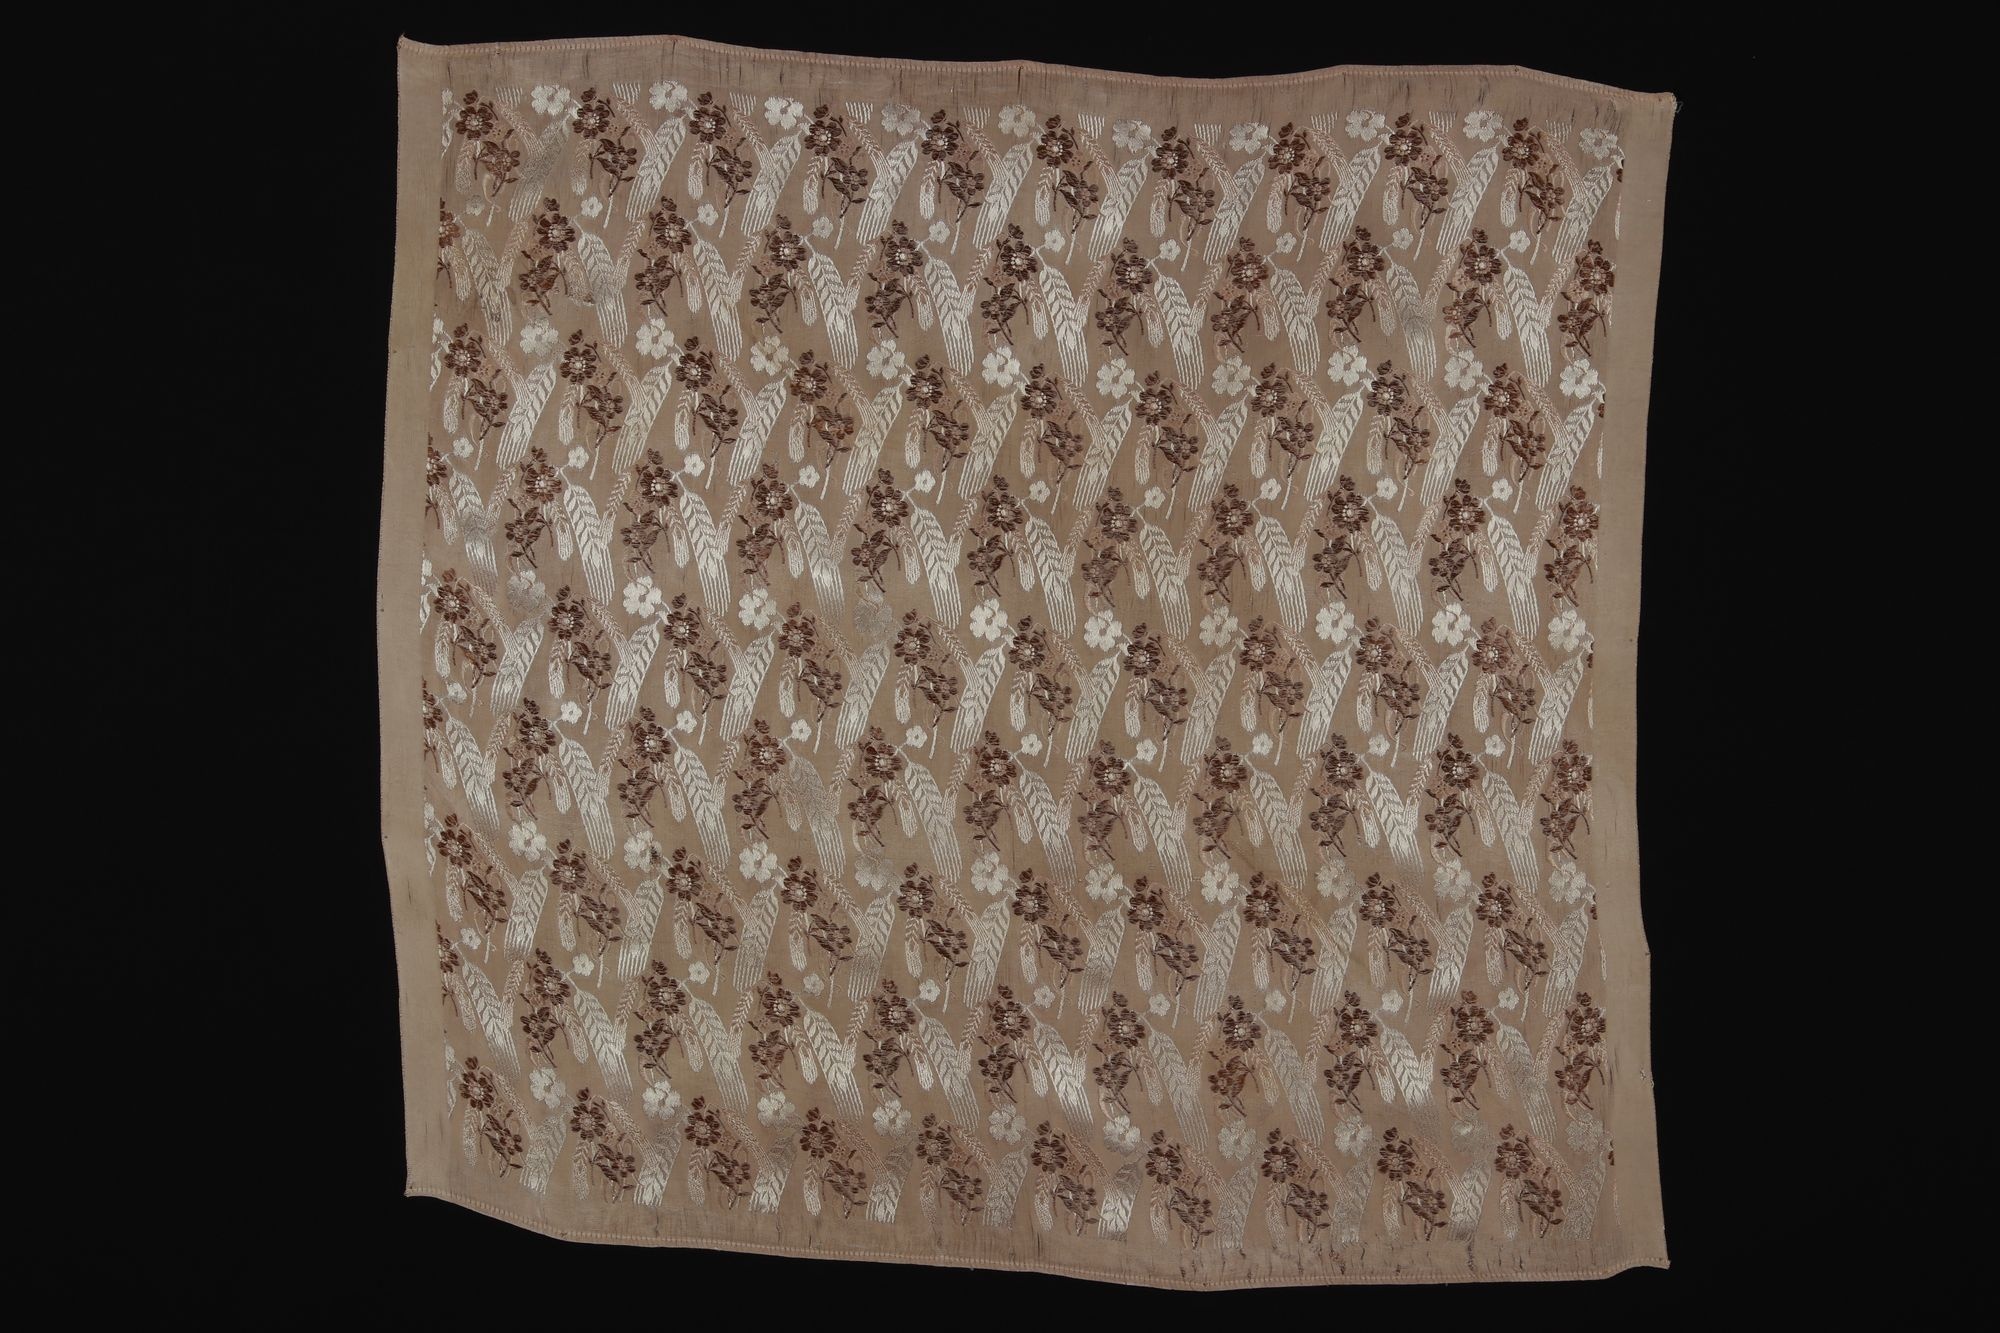 Selyemkendő "selemkendő" (Rippl-Rónai Múzeum CC BY-NC-SA)